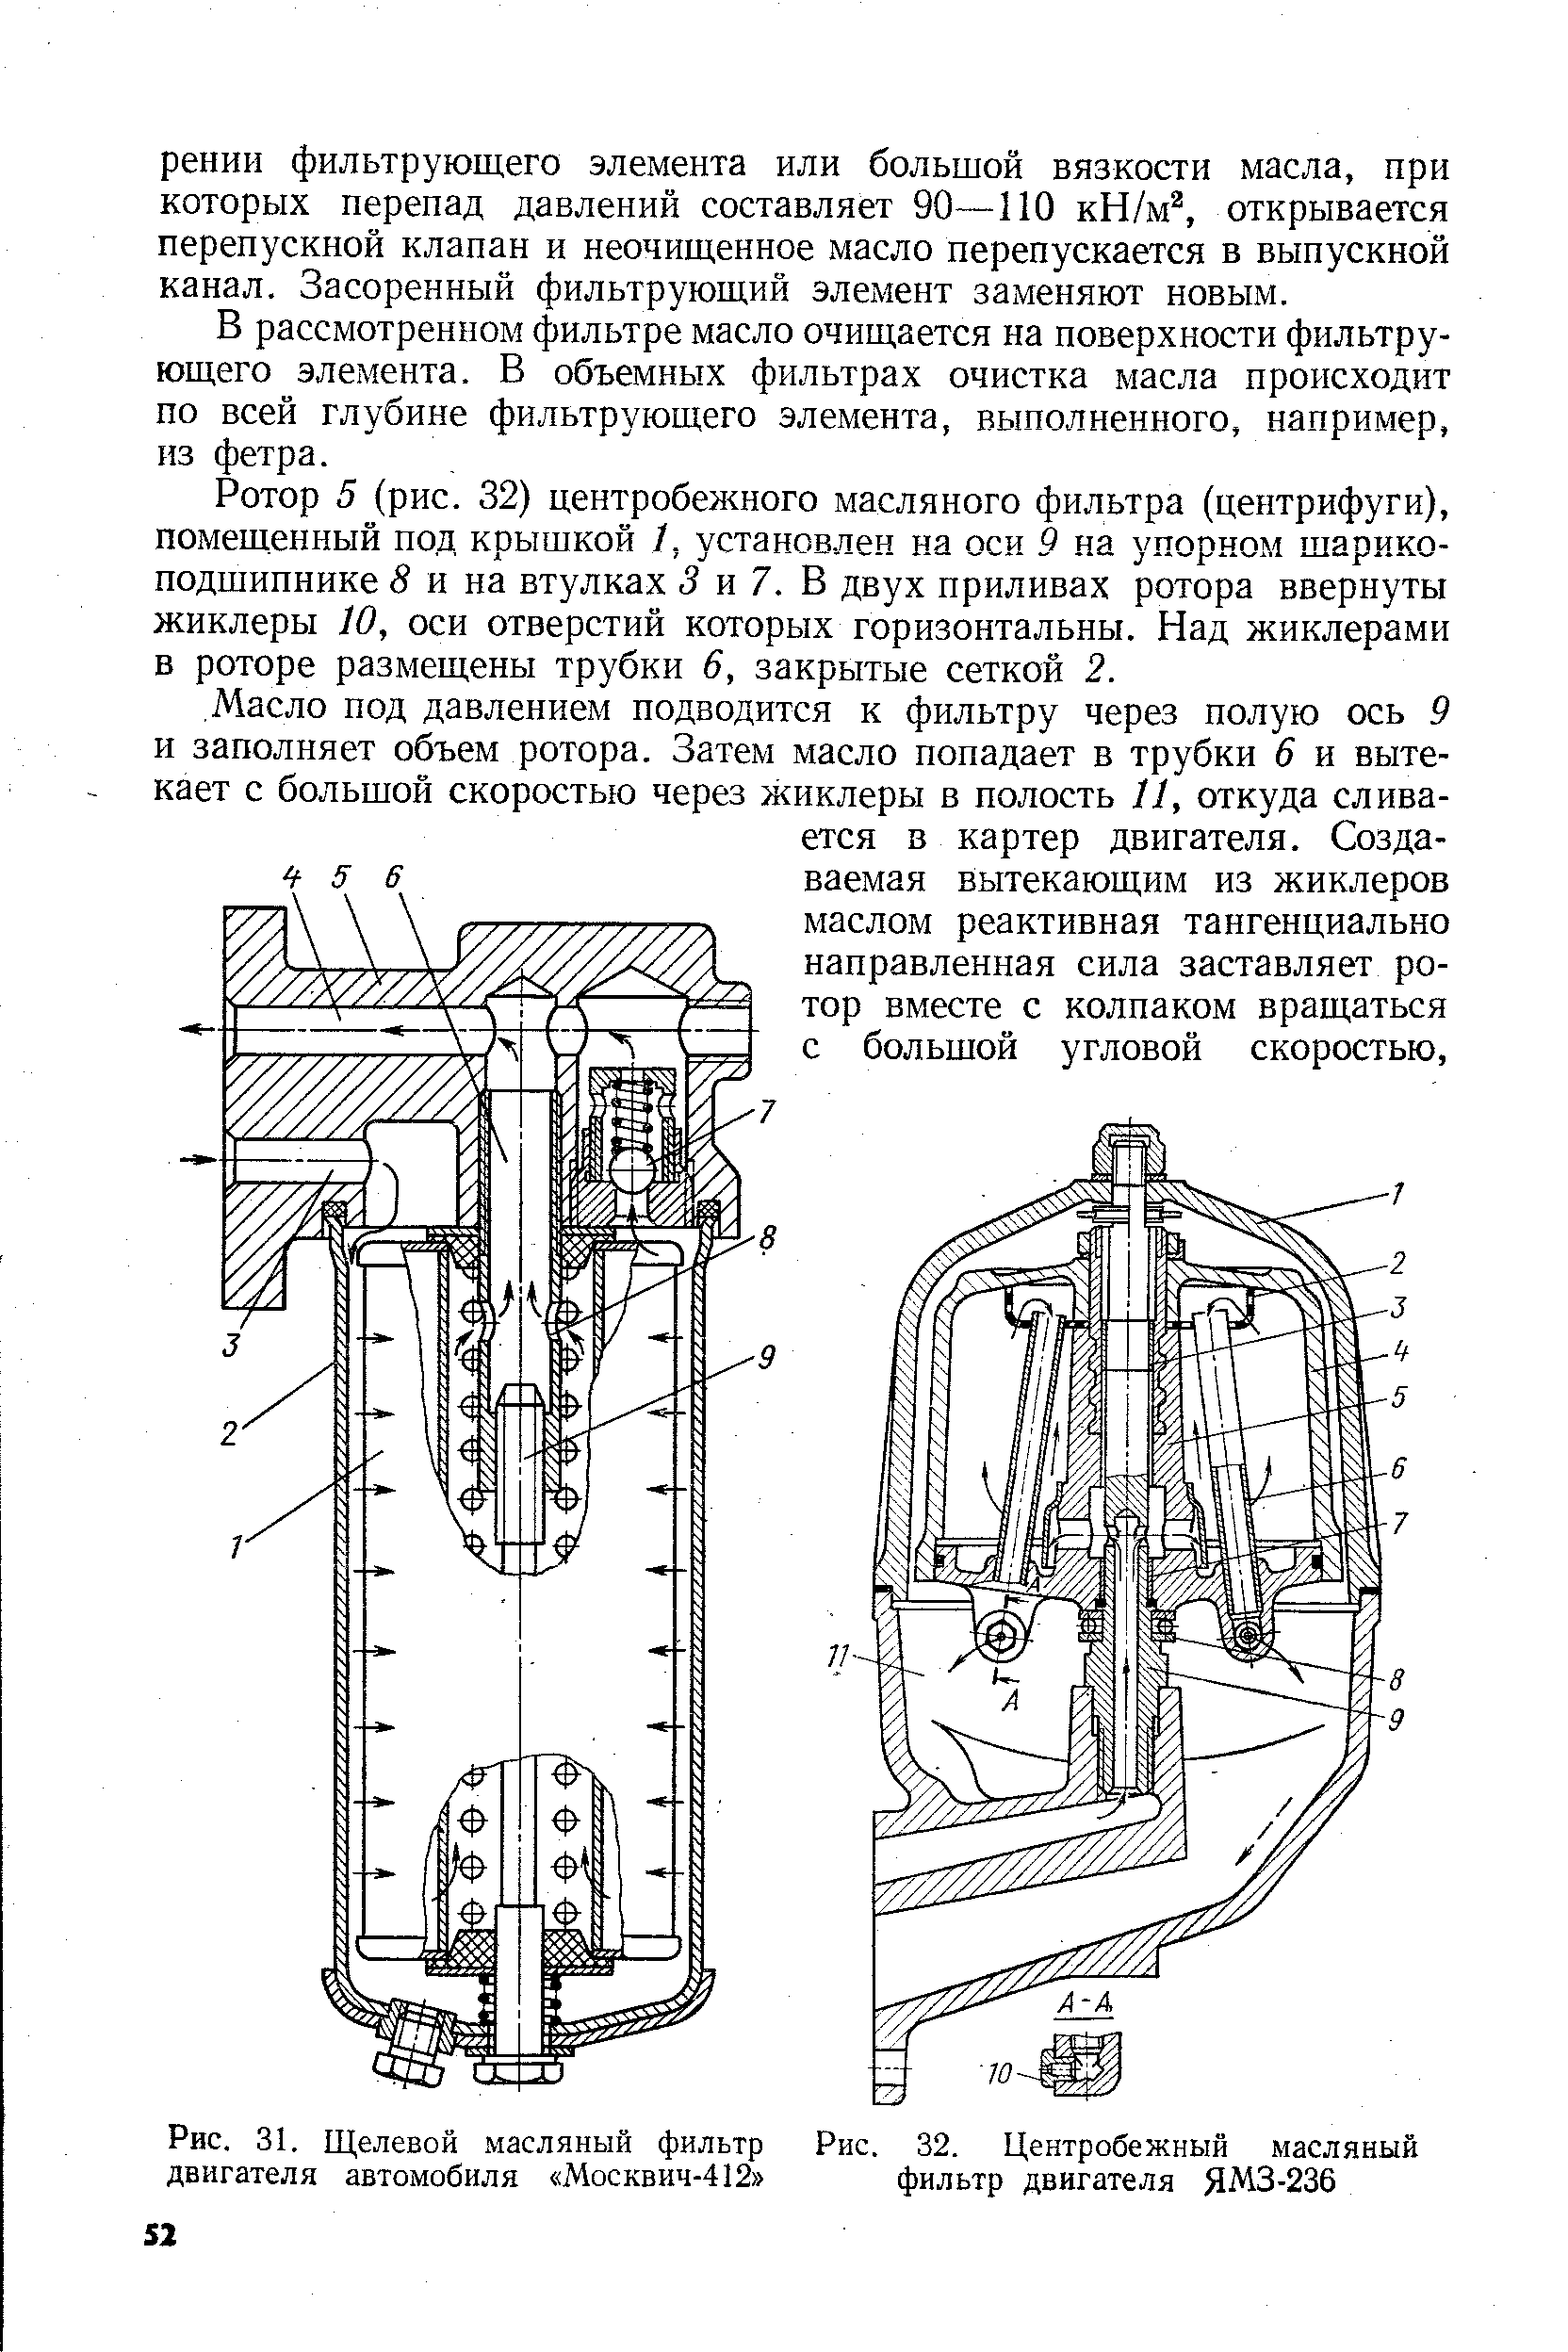 Рис. 32. Центробежный масляный фильтр двигателя ЯМЗ-236